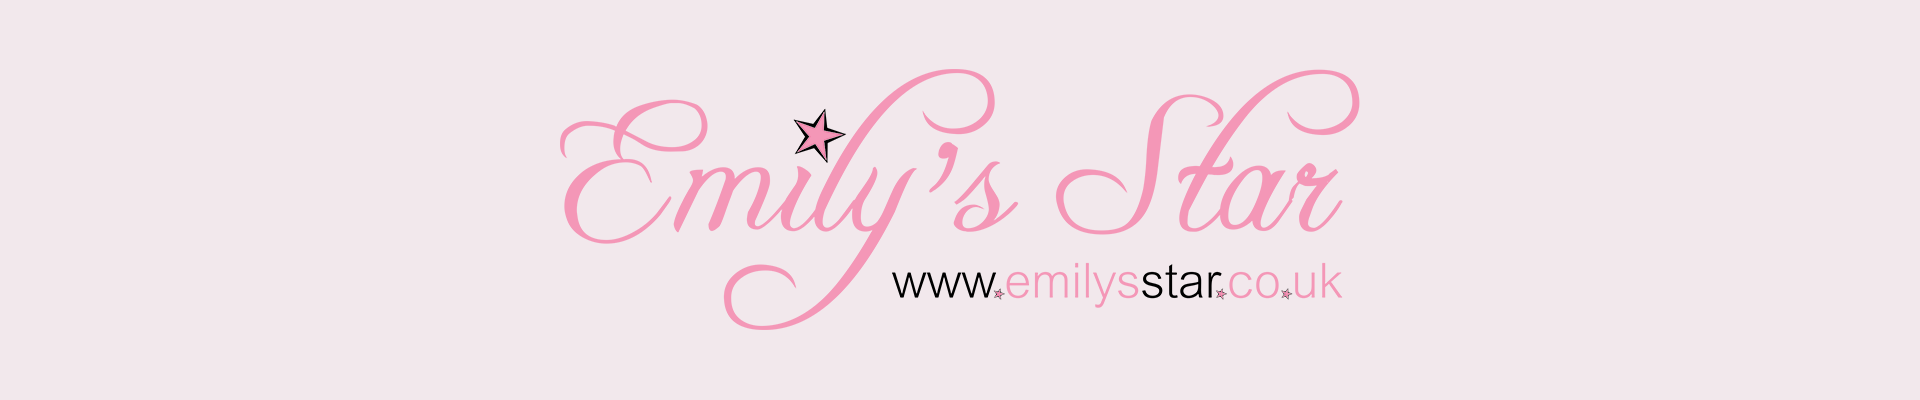 Emily's Star 5k & 10k 2017